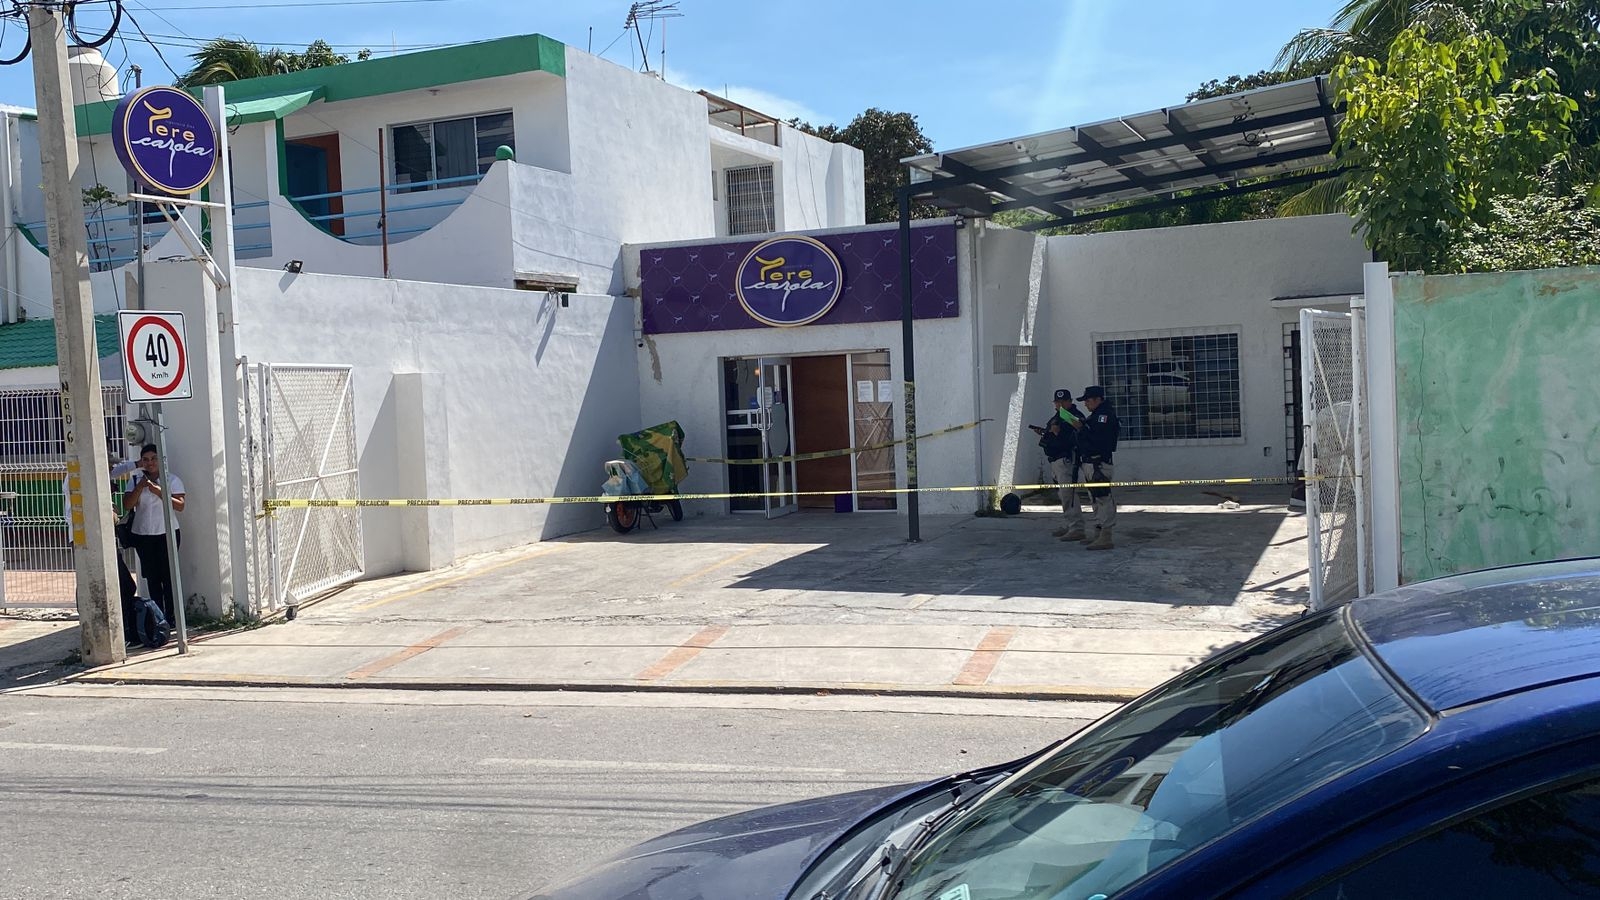 Arrestan a un hombre por amenazar a la empleada de un Tere Cazola en Campeche